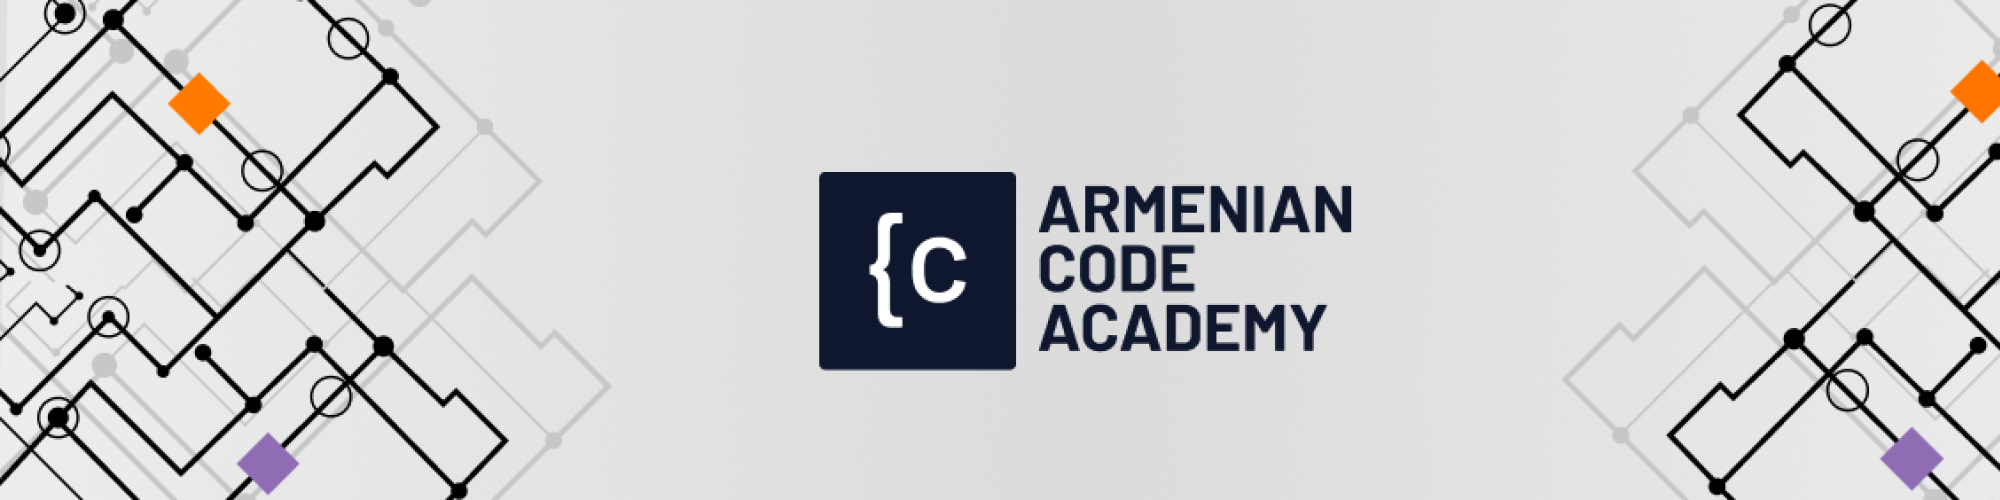 Armenian Code Academy